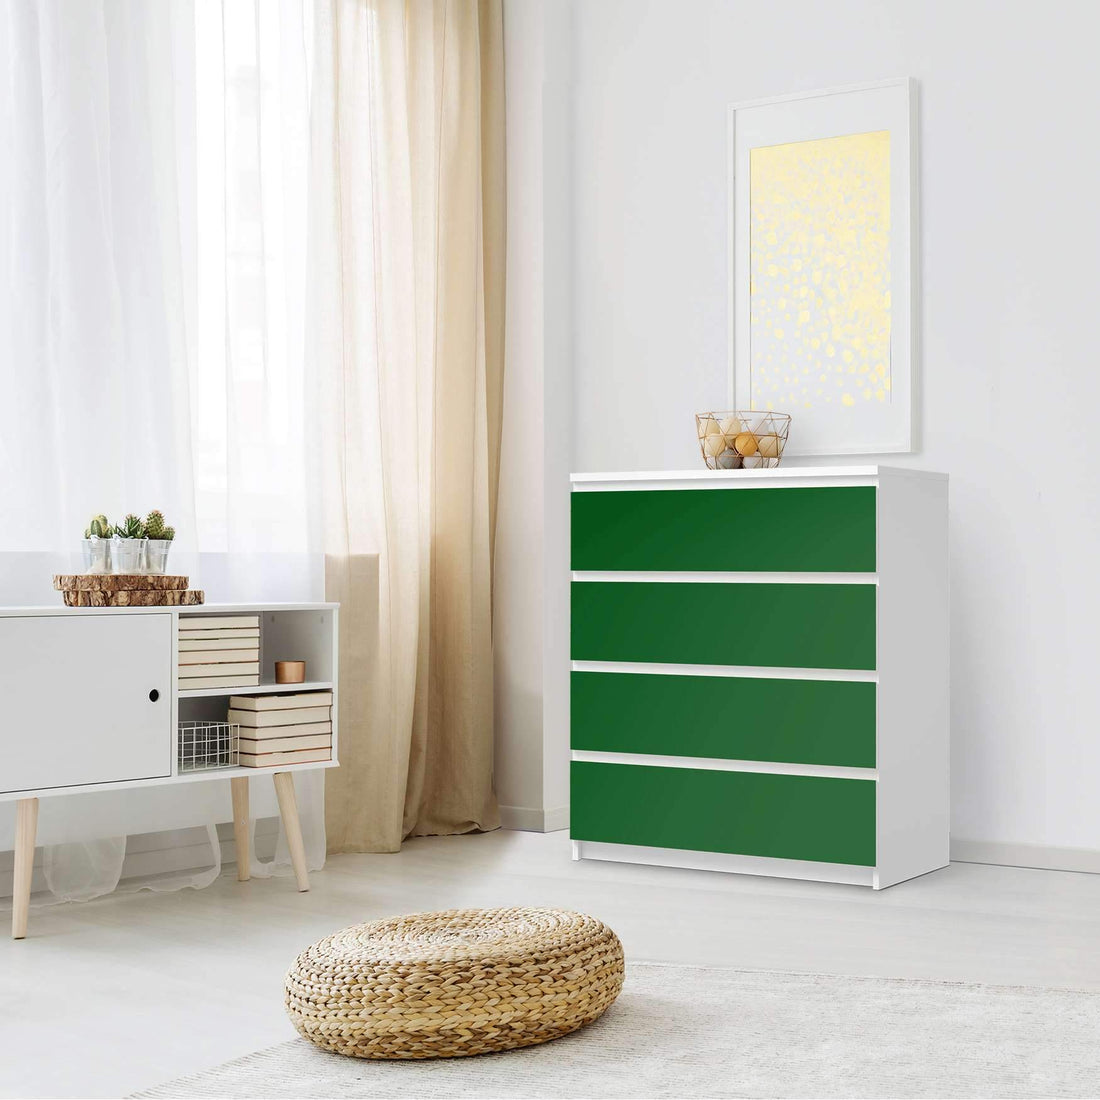 Folie für Möbel Grün Dark - IKEA Malm Kommode 4 Schubladen - Schlafzimmer